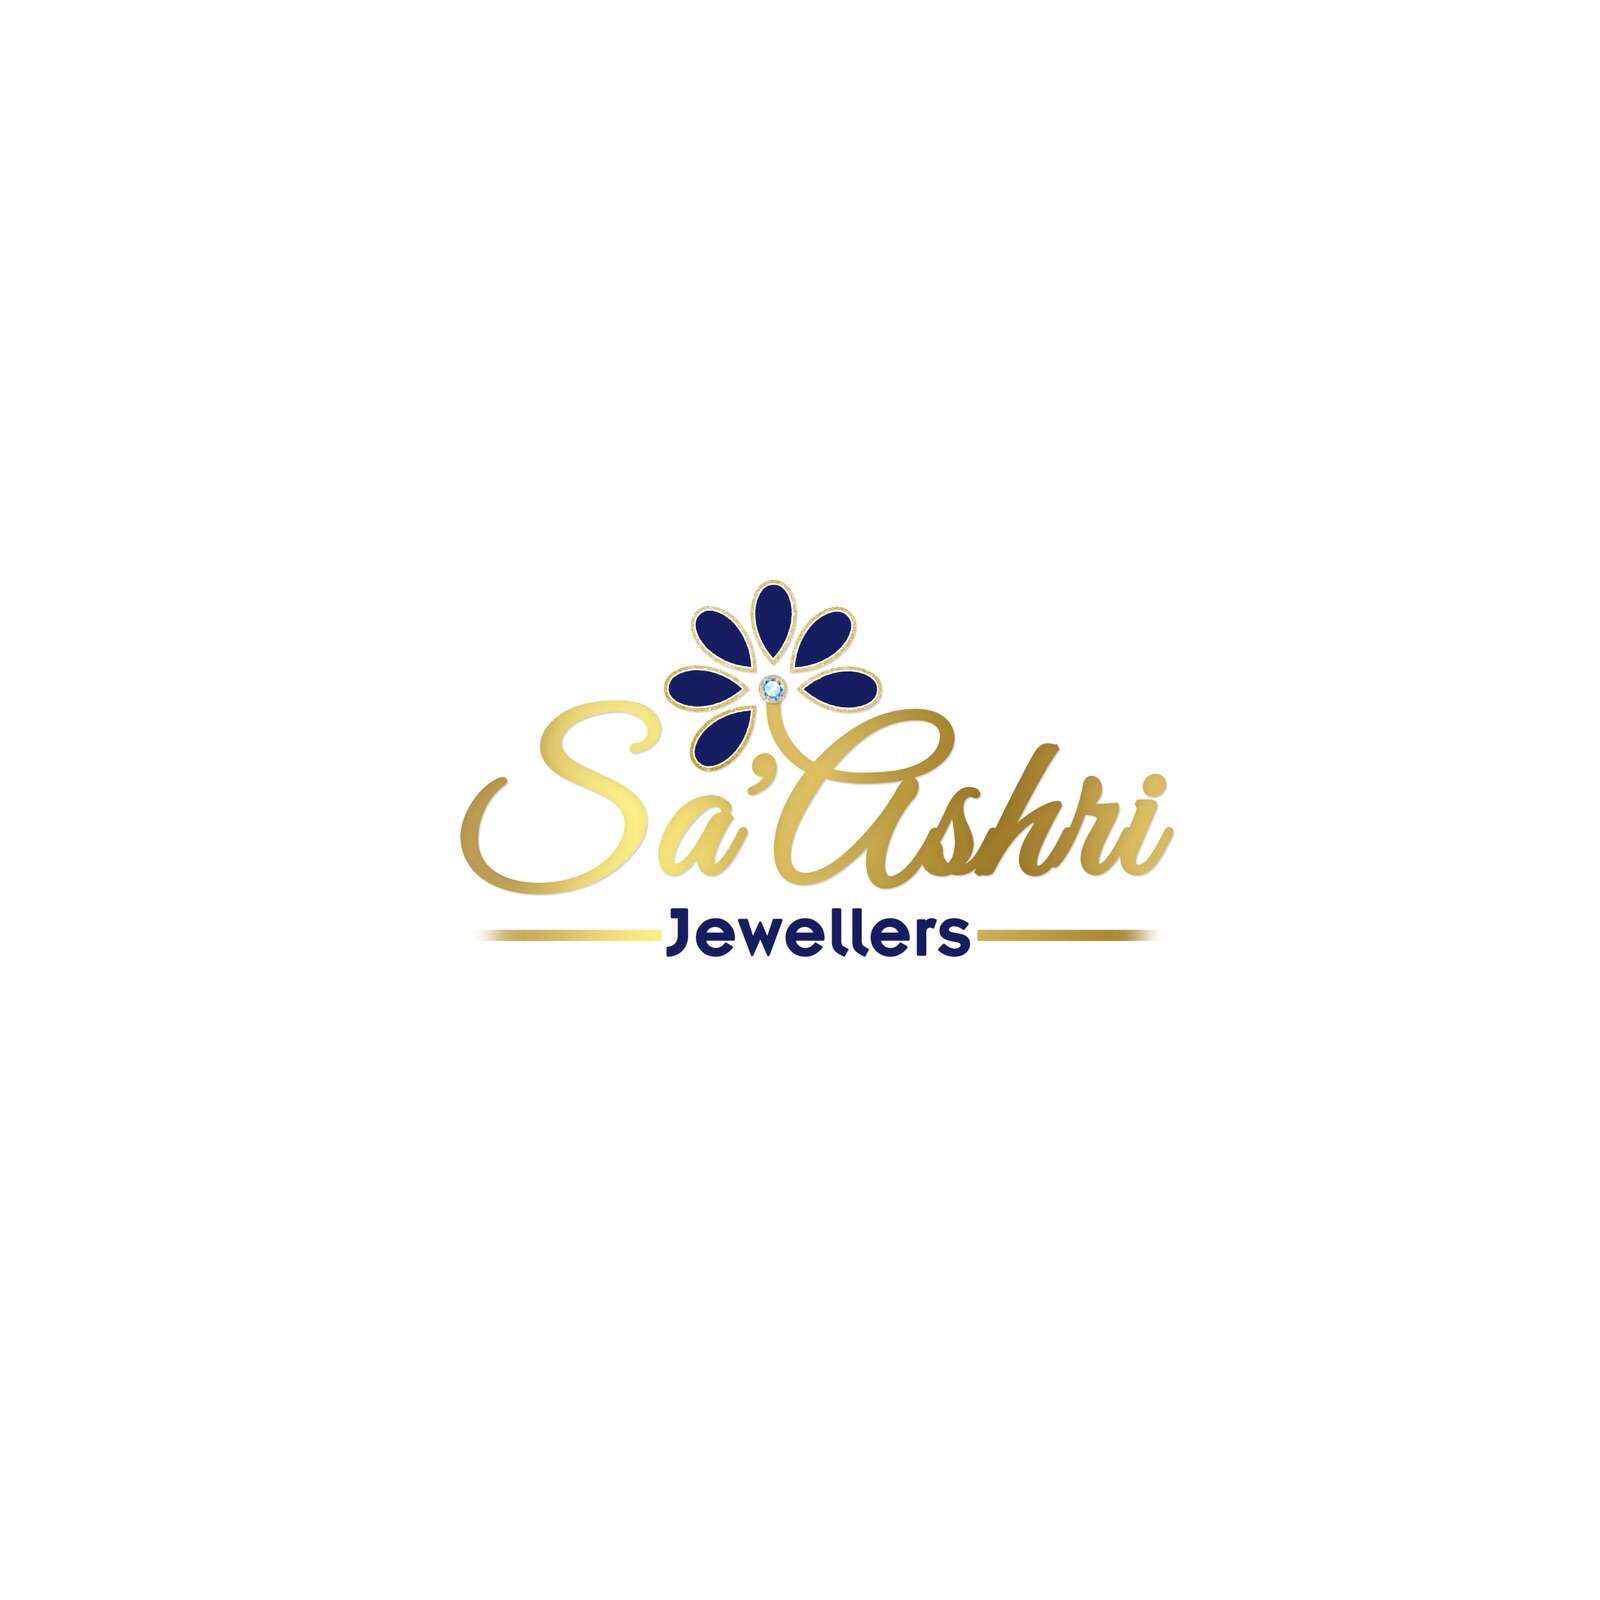 Saashri Jewellers